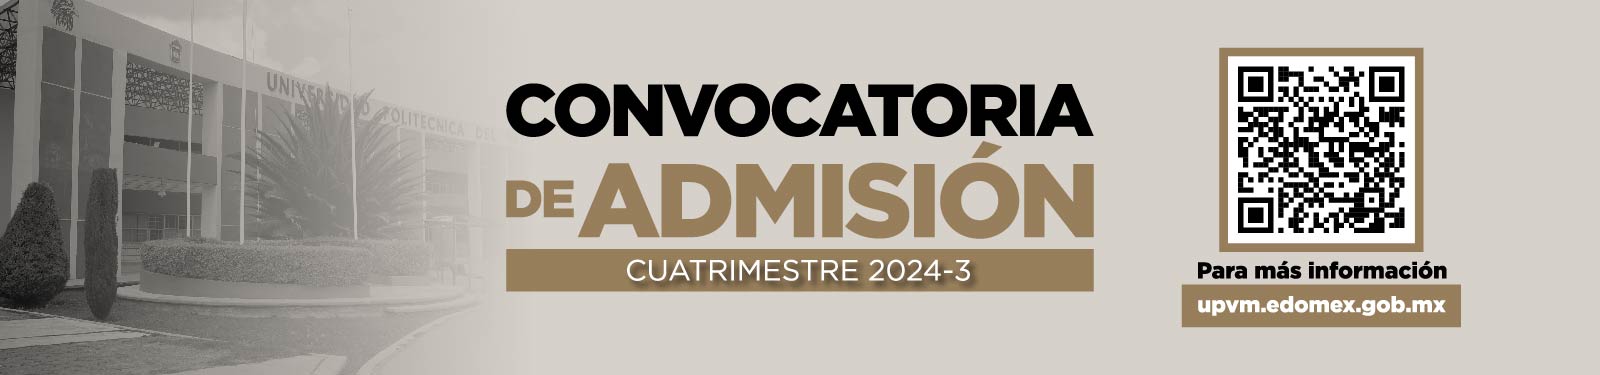 Convocatorias de admisión 2024-3